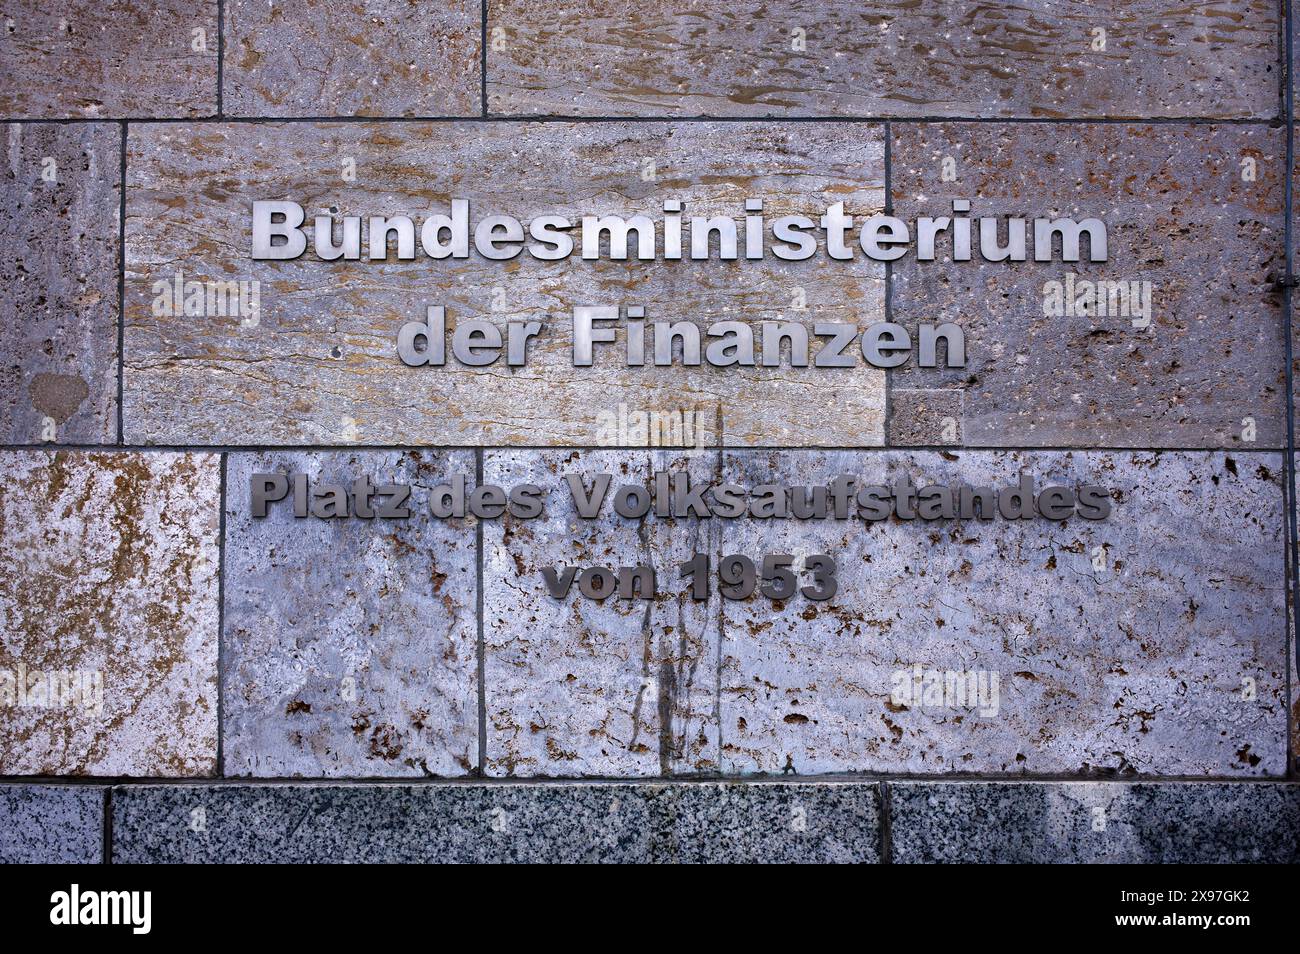 Entrance, lettering, Federal Ministry of Finance, Ministry of Finance, formerly Reich Aviation Ministry, Platz des Volksaufstandes von 1953, Berlin Stock Photo